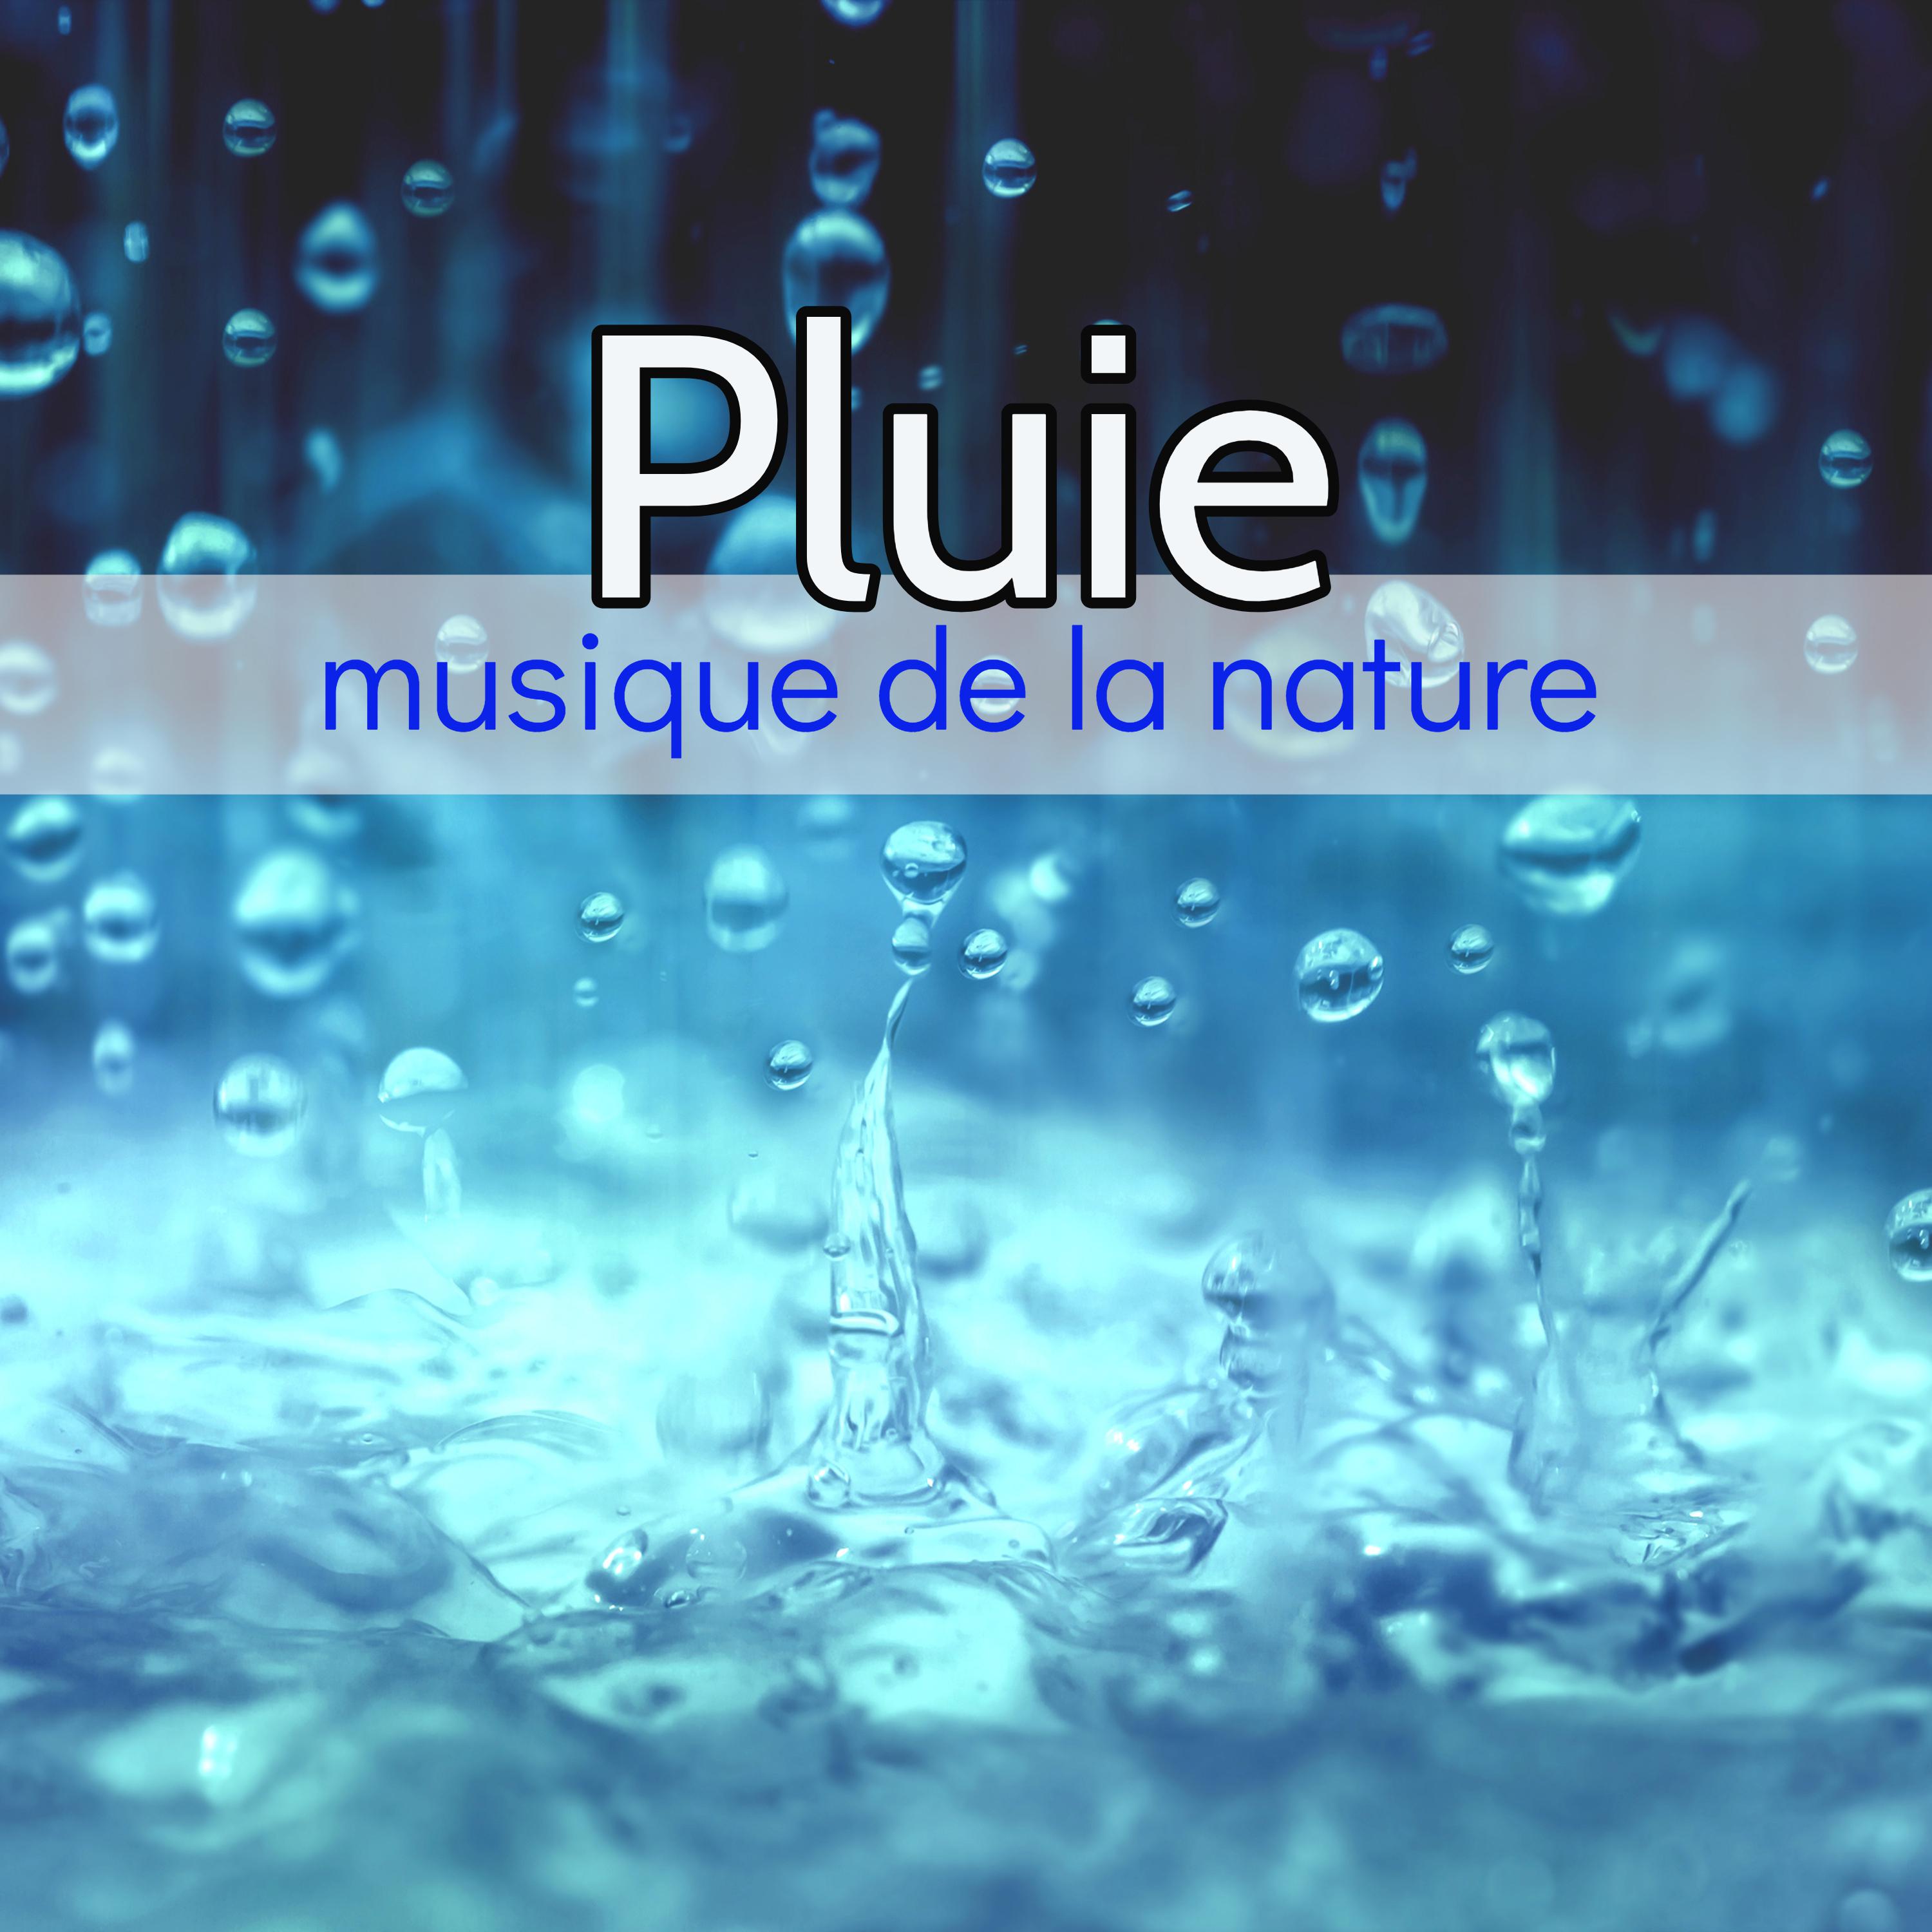 Pluie, musique de la nature – 1 heure de bruit de la pluie anti stress pour la détente et le sommeil